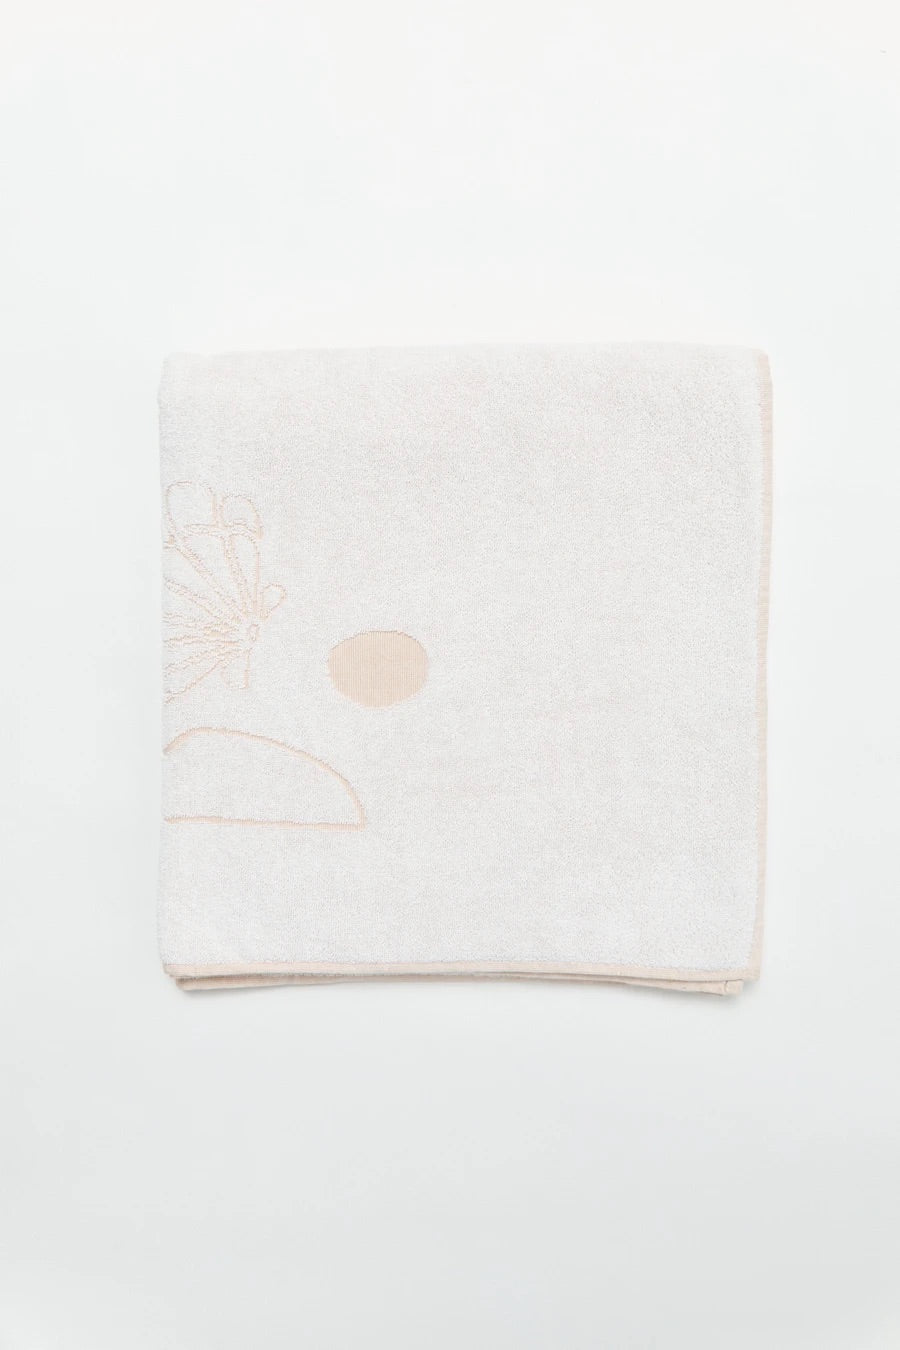 no.1 coastal calm towel